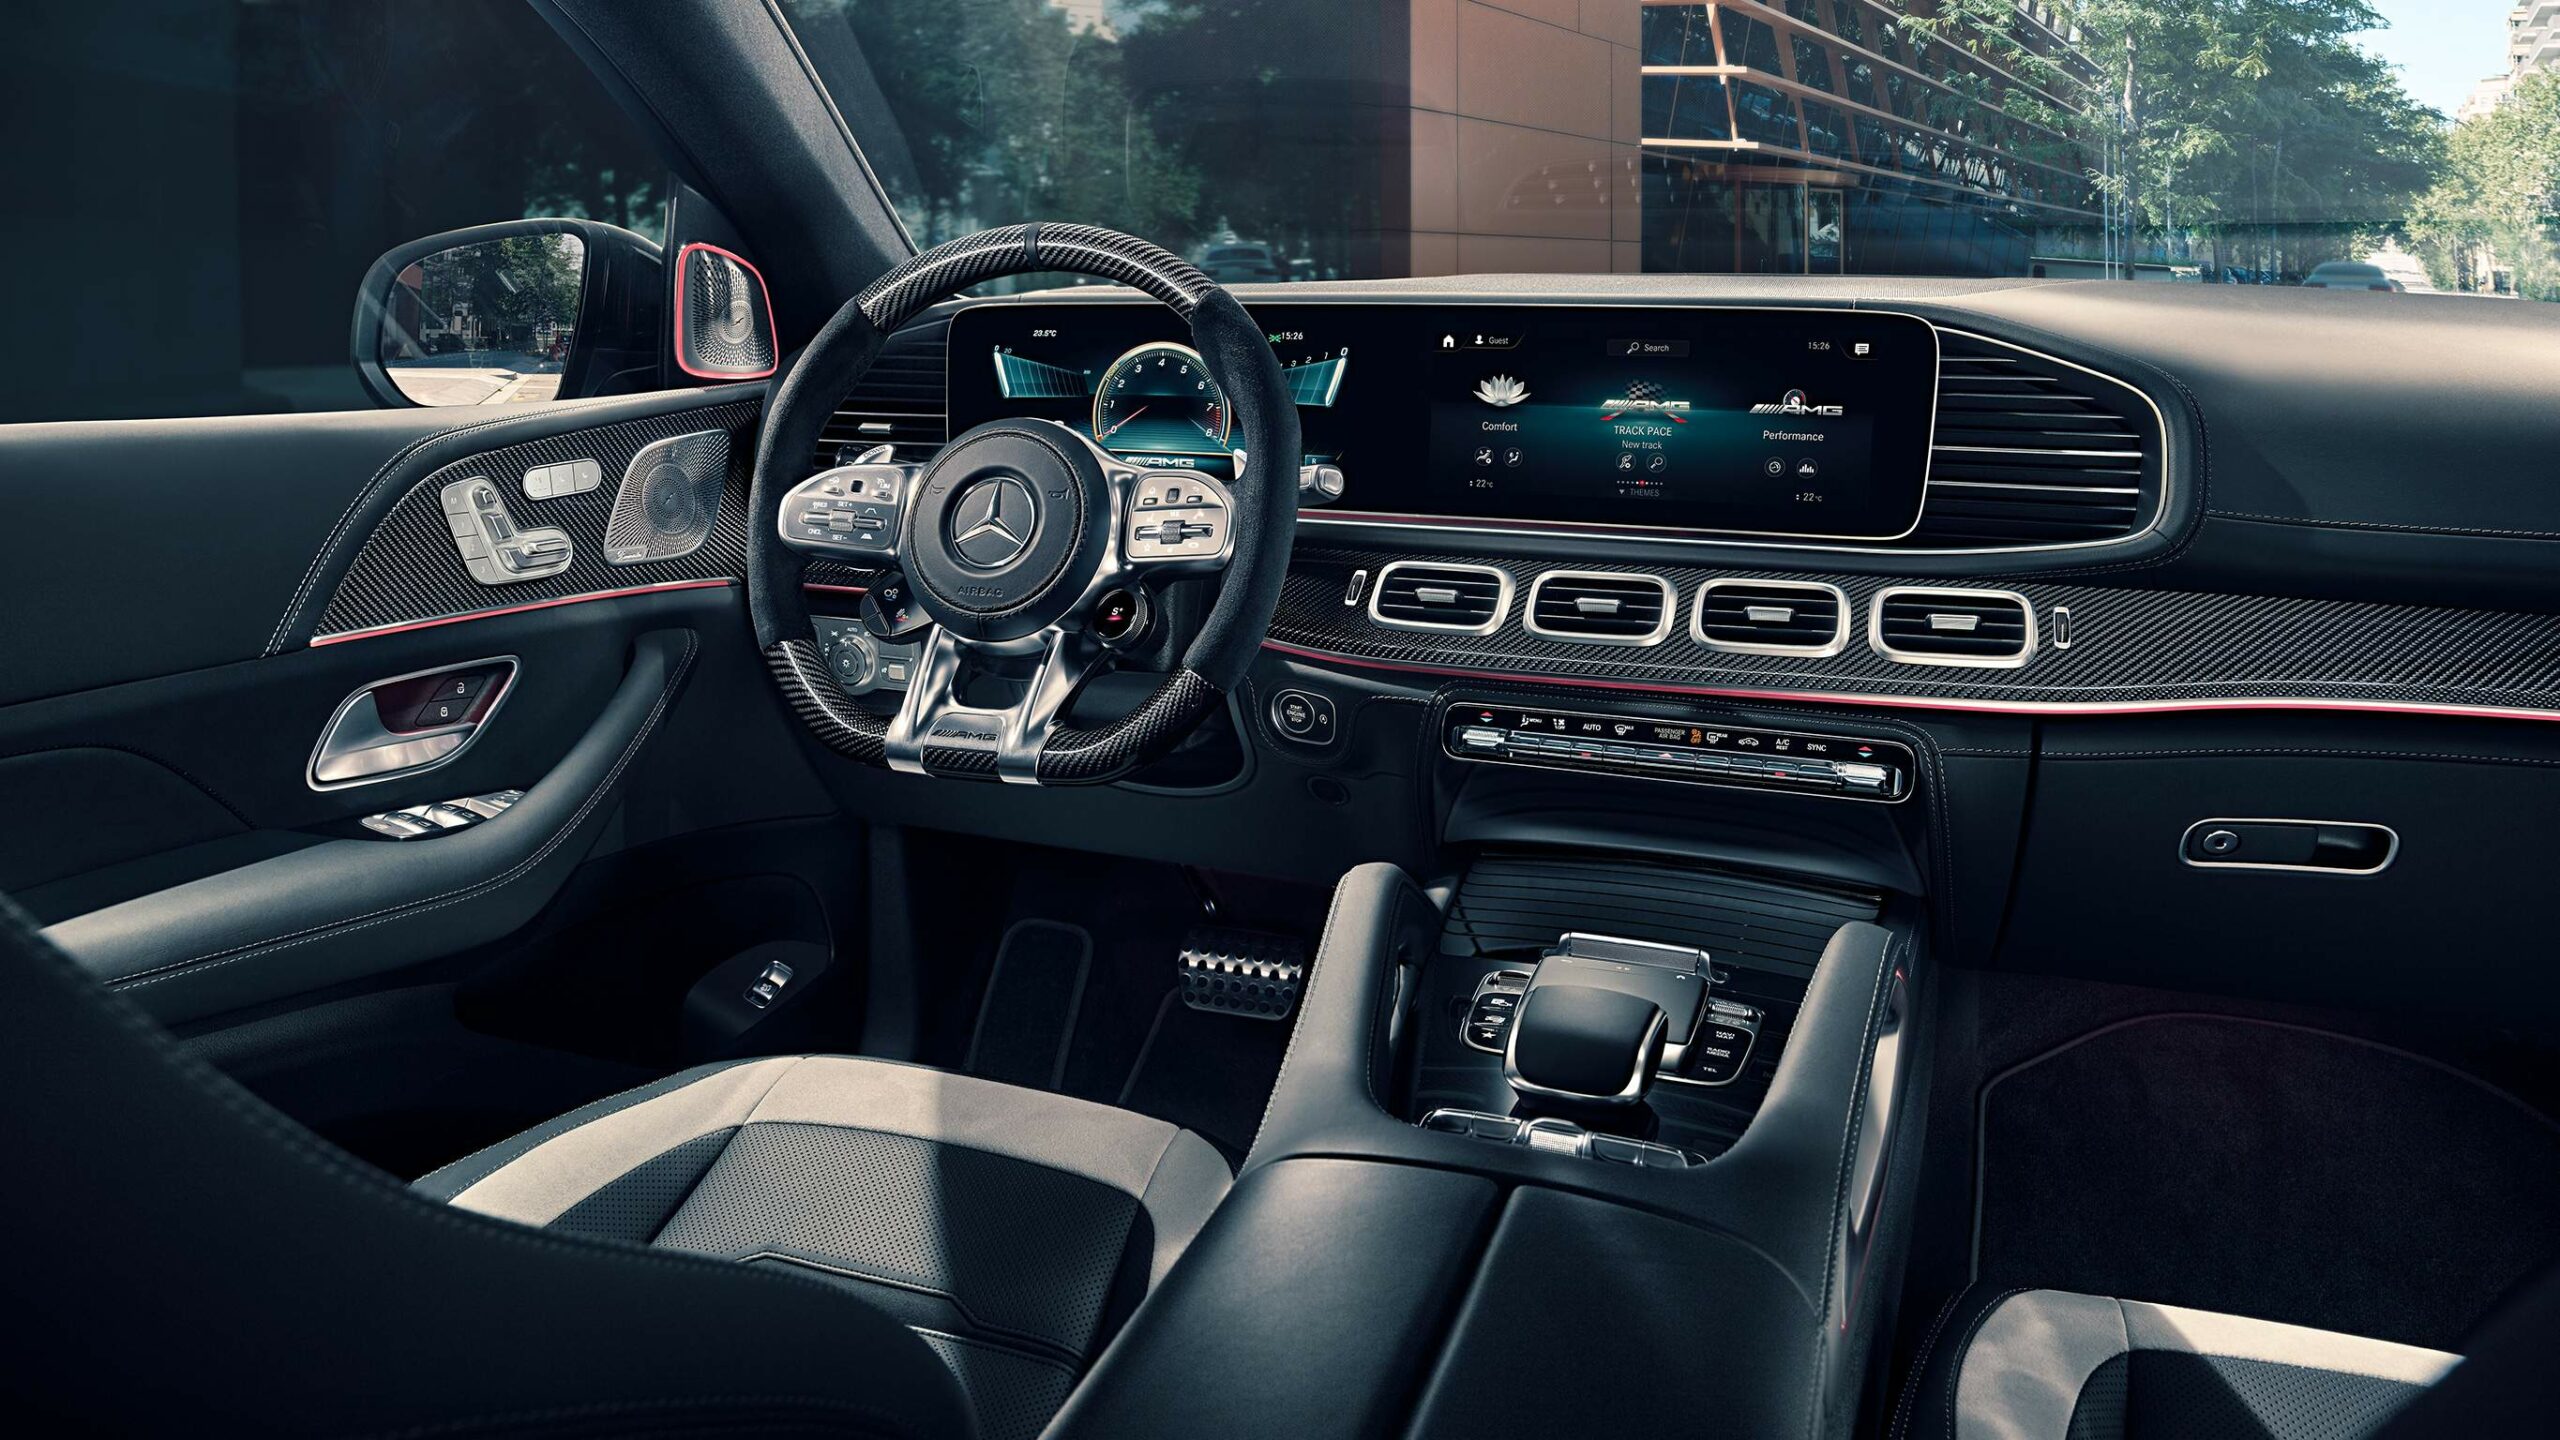 Diseño interior digital de la GLE Coupe AMG de Mercedes-Benz, altamente deportivo